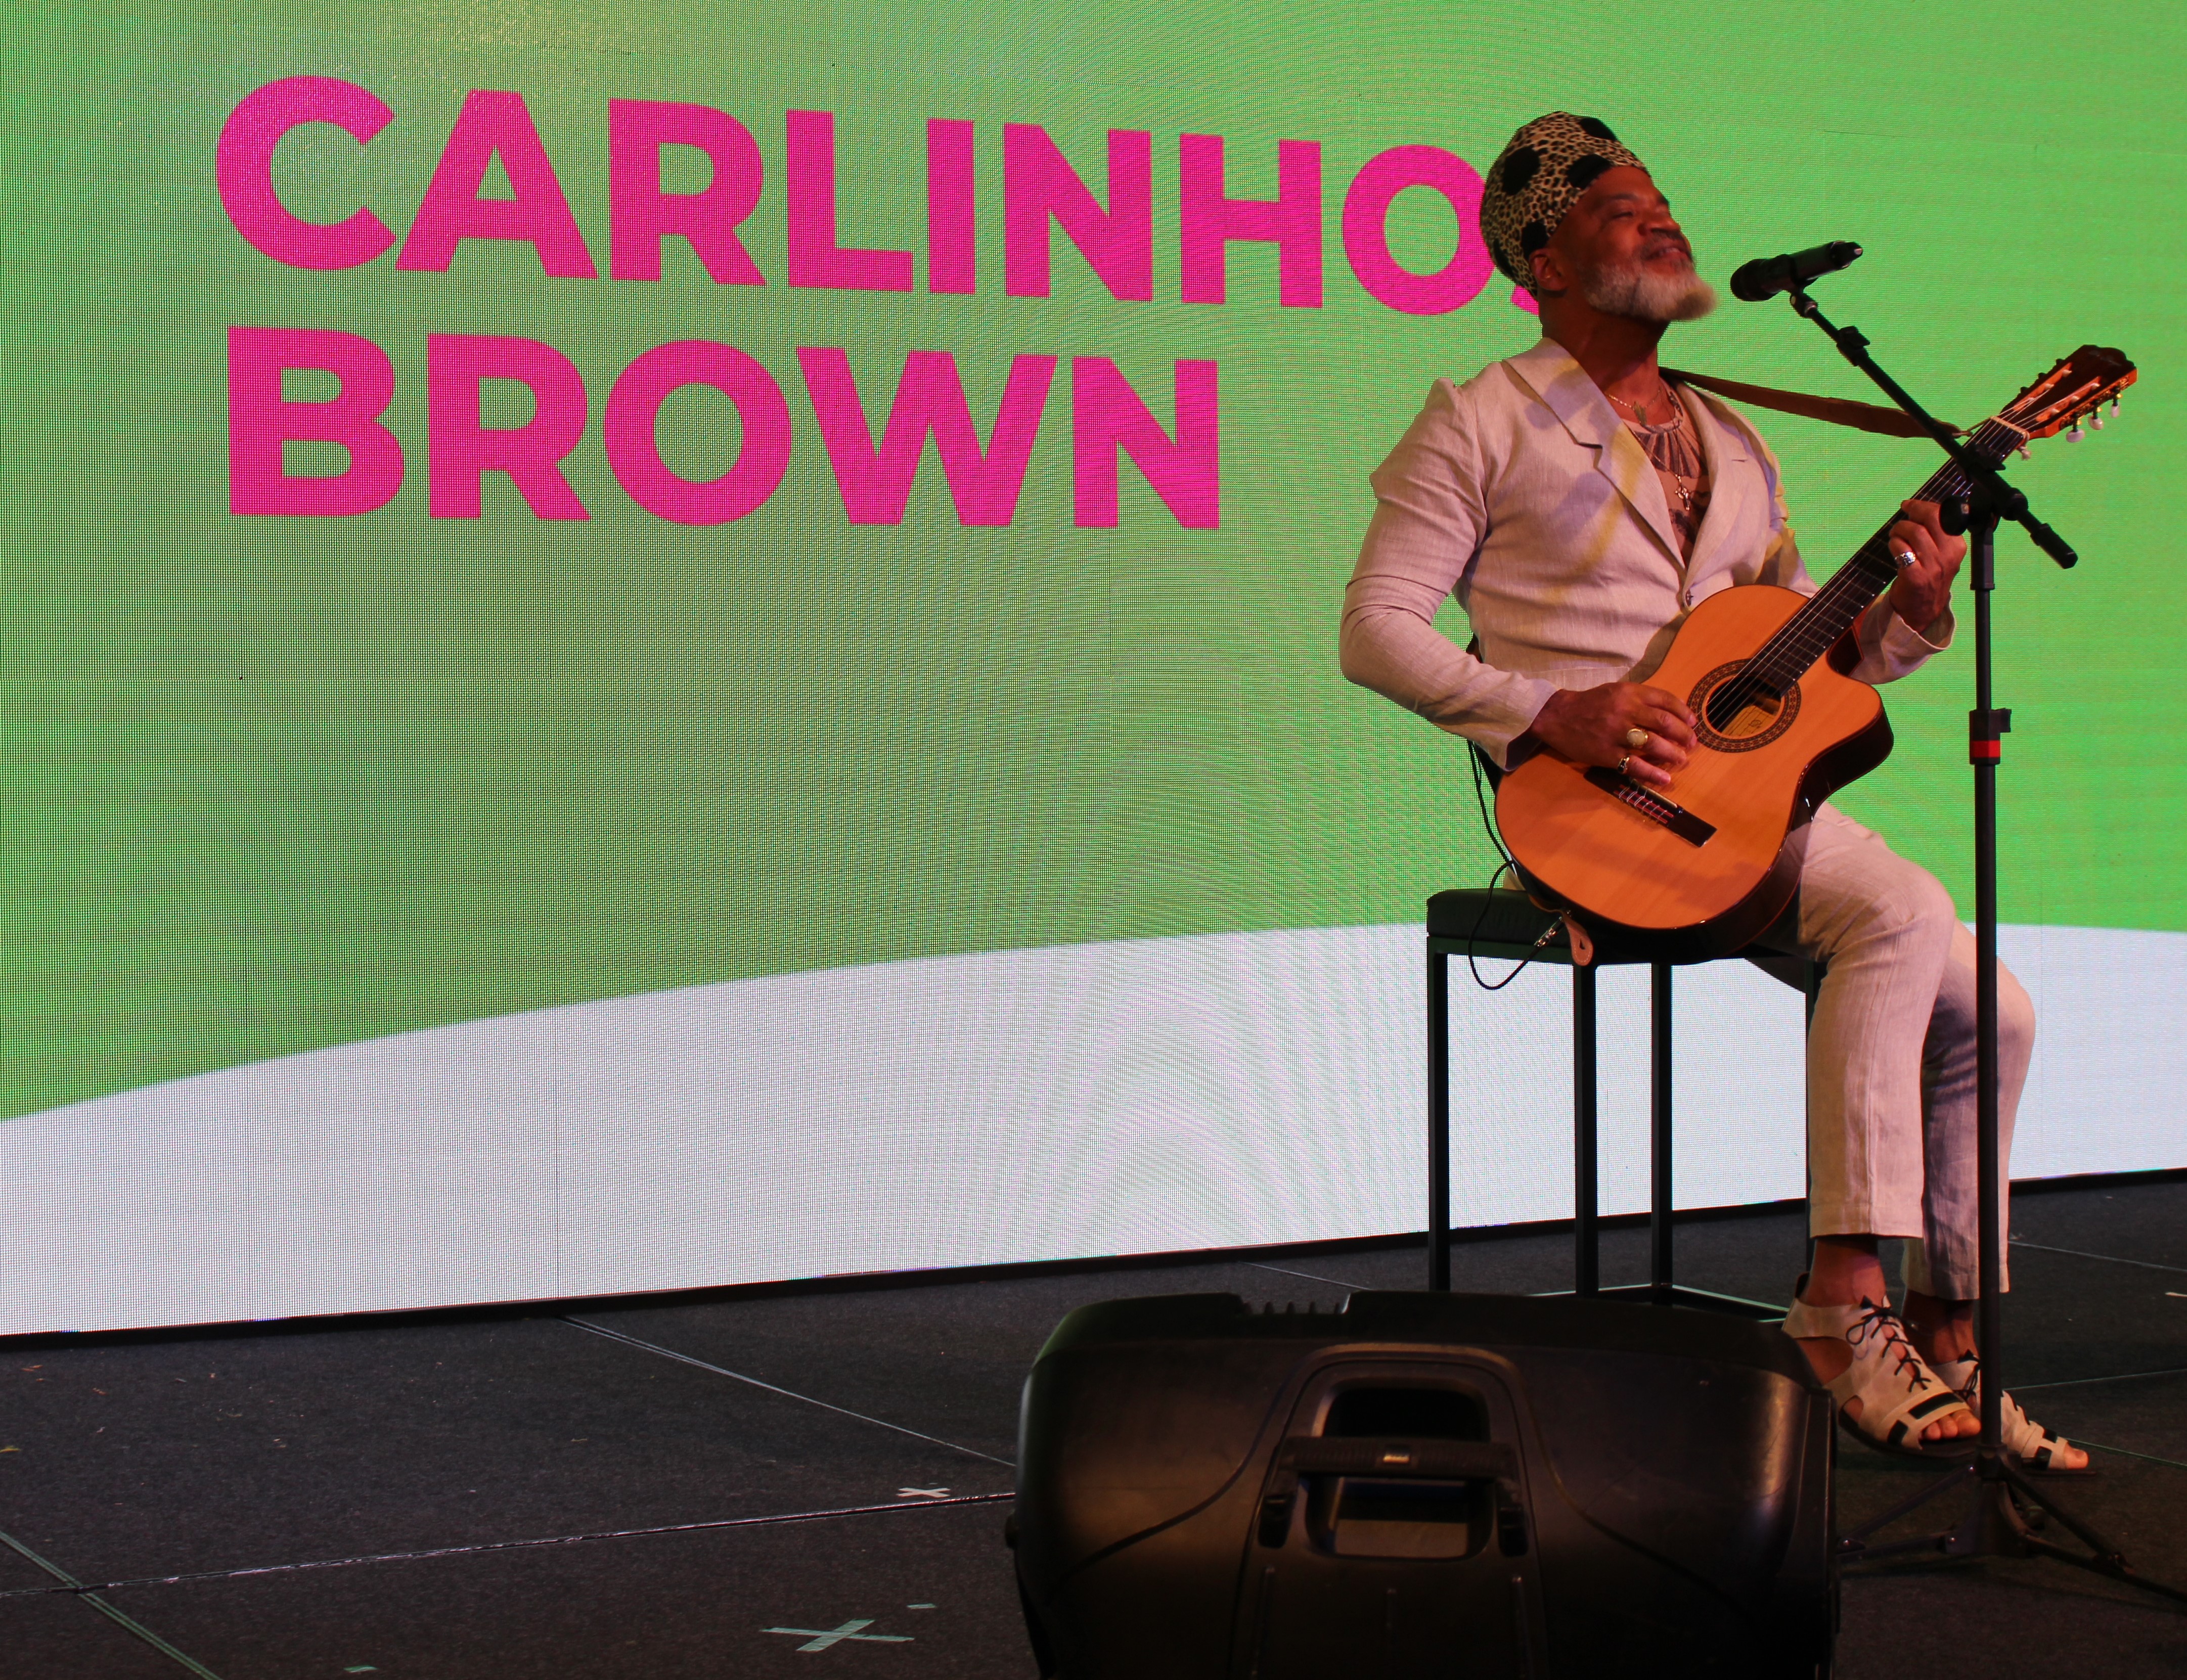 Carlinhos Brown está no palco, sentado em um banco, segurando um violão e com um microfone á sua frente. Ele canta para o público e atrás dele o telão está nas cores verde e branca com o texto na cor rosa: Carlinhos Brown.